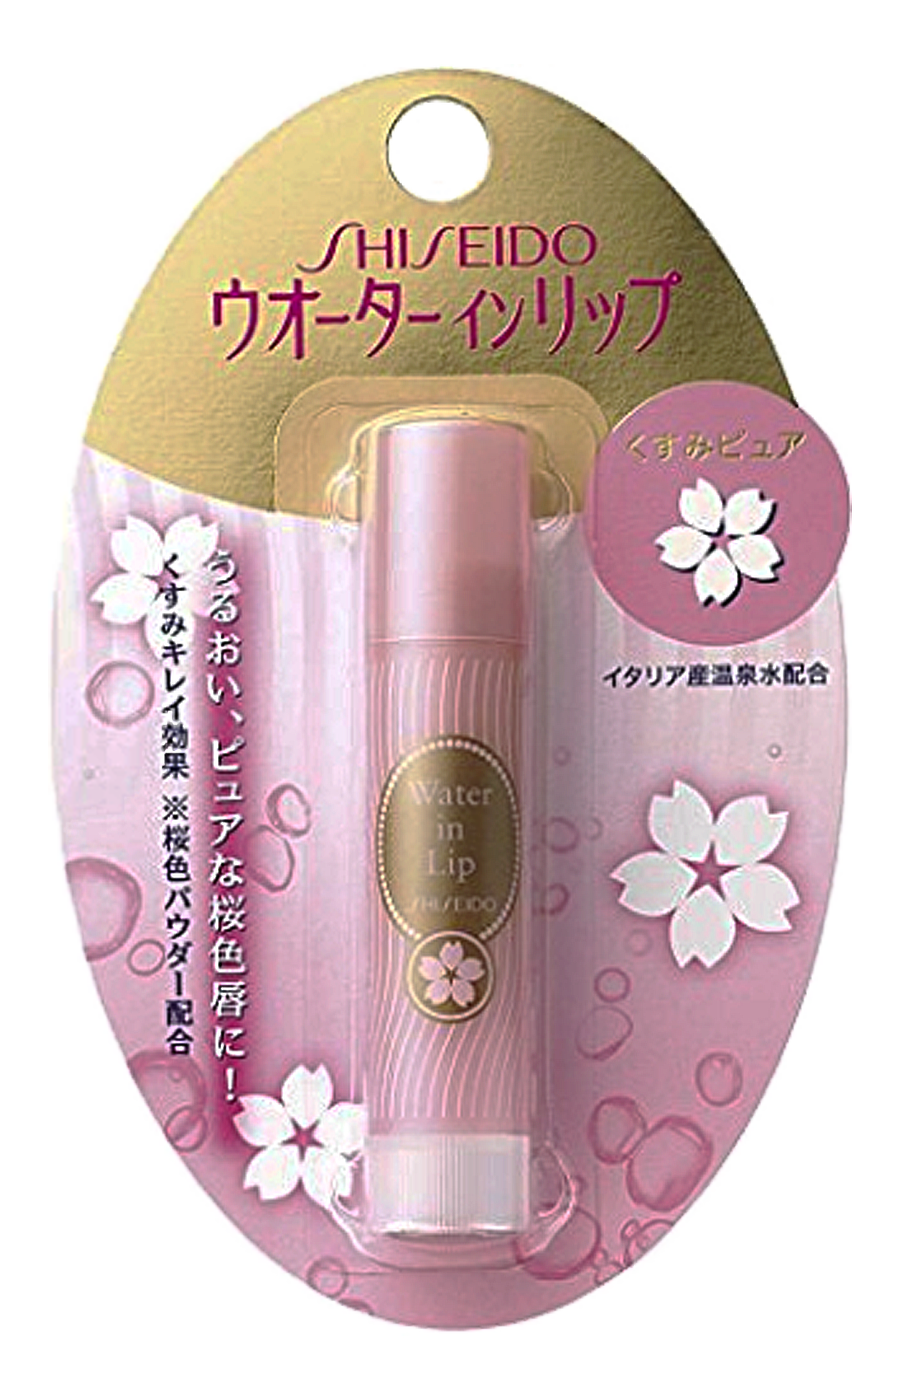 Shiseido Water In Lip гигиеническая увлажняющая губная помада с ароматом вишни